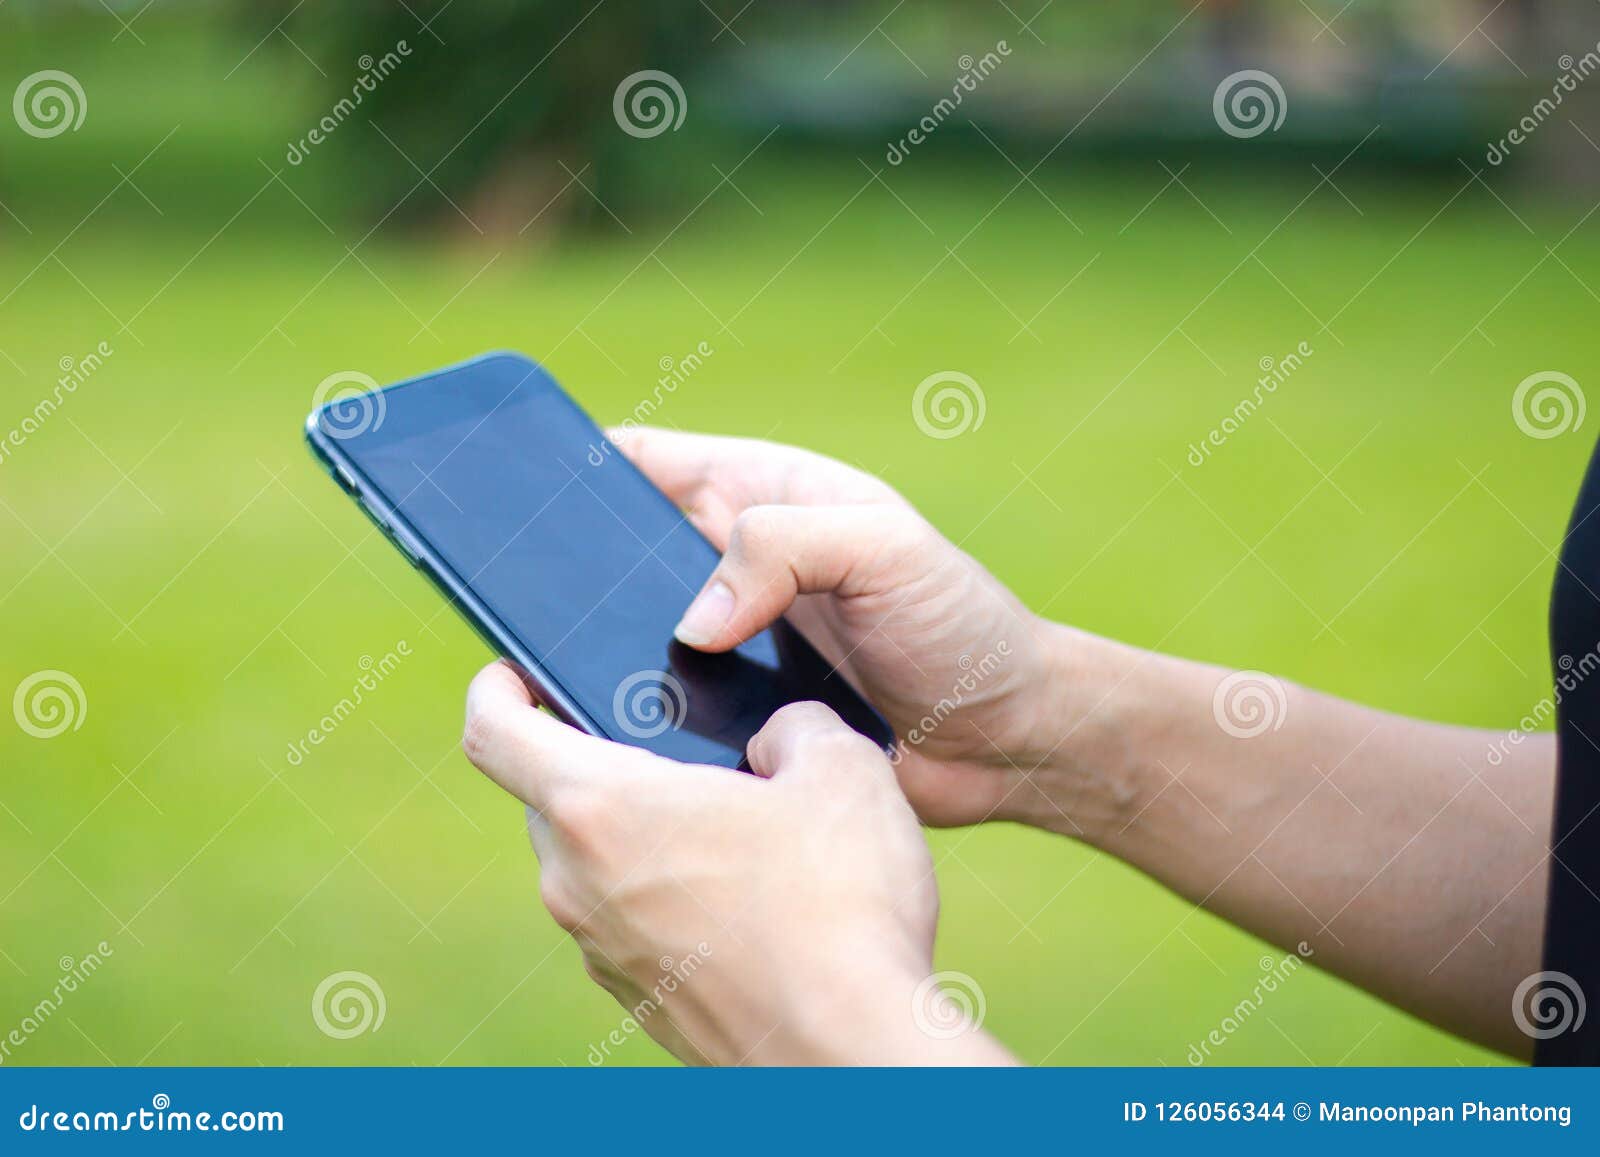 Закройте вверх человека используя мобильный умный телефон в парке руки к. Закройте вверх человека используя мобильный умный телефон в парке мобильный телефон экранного дисплея касания рук